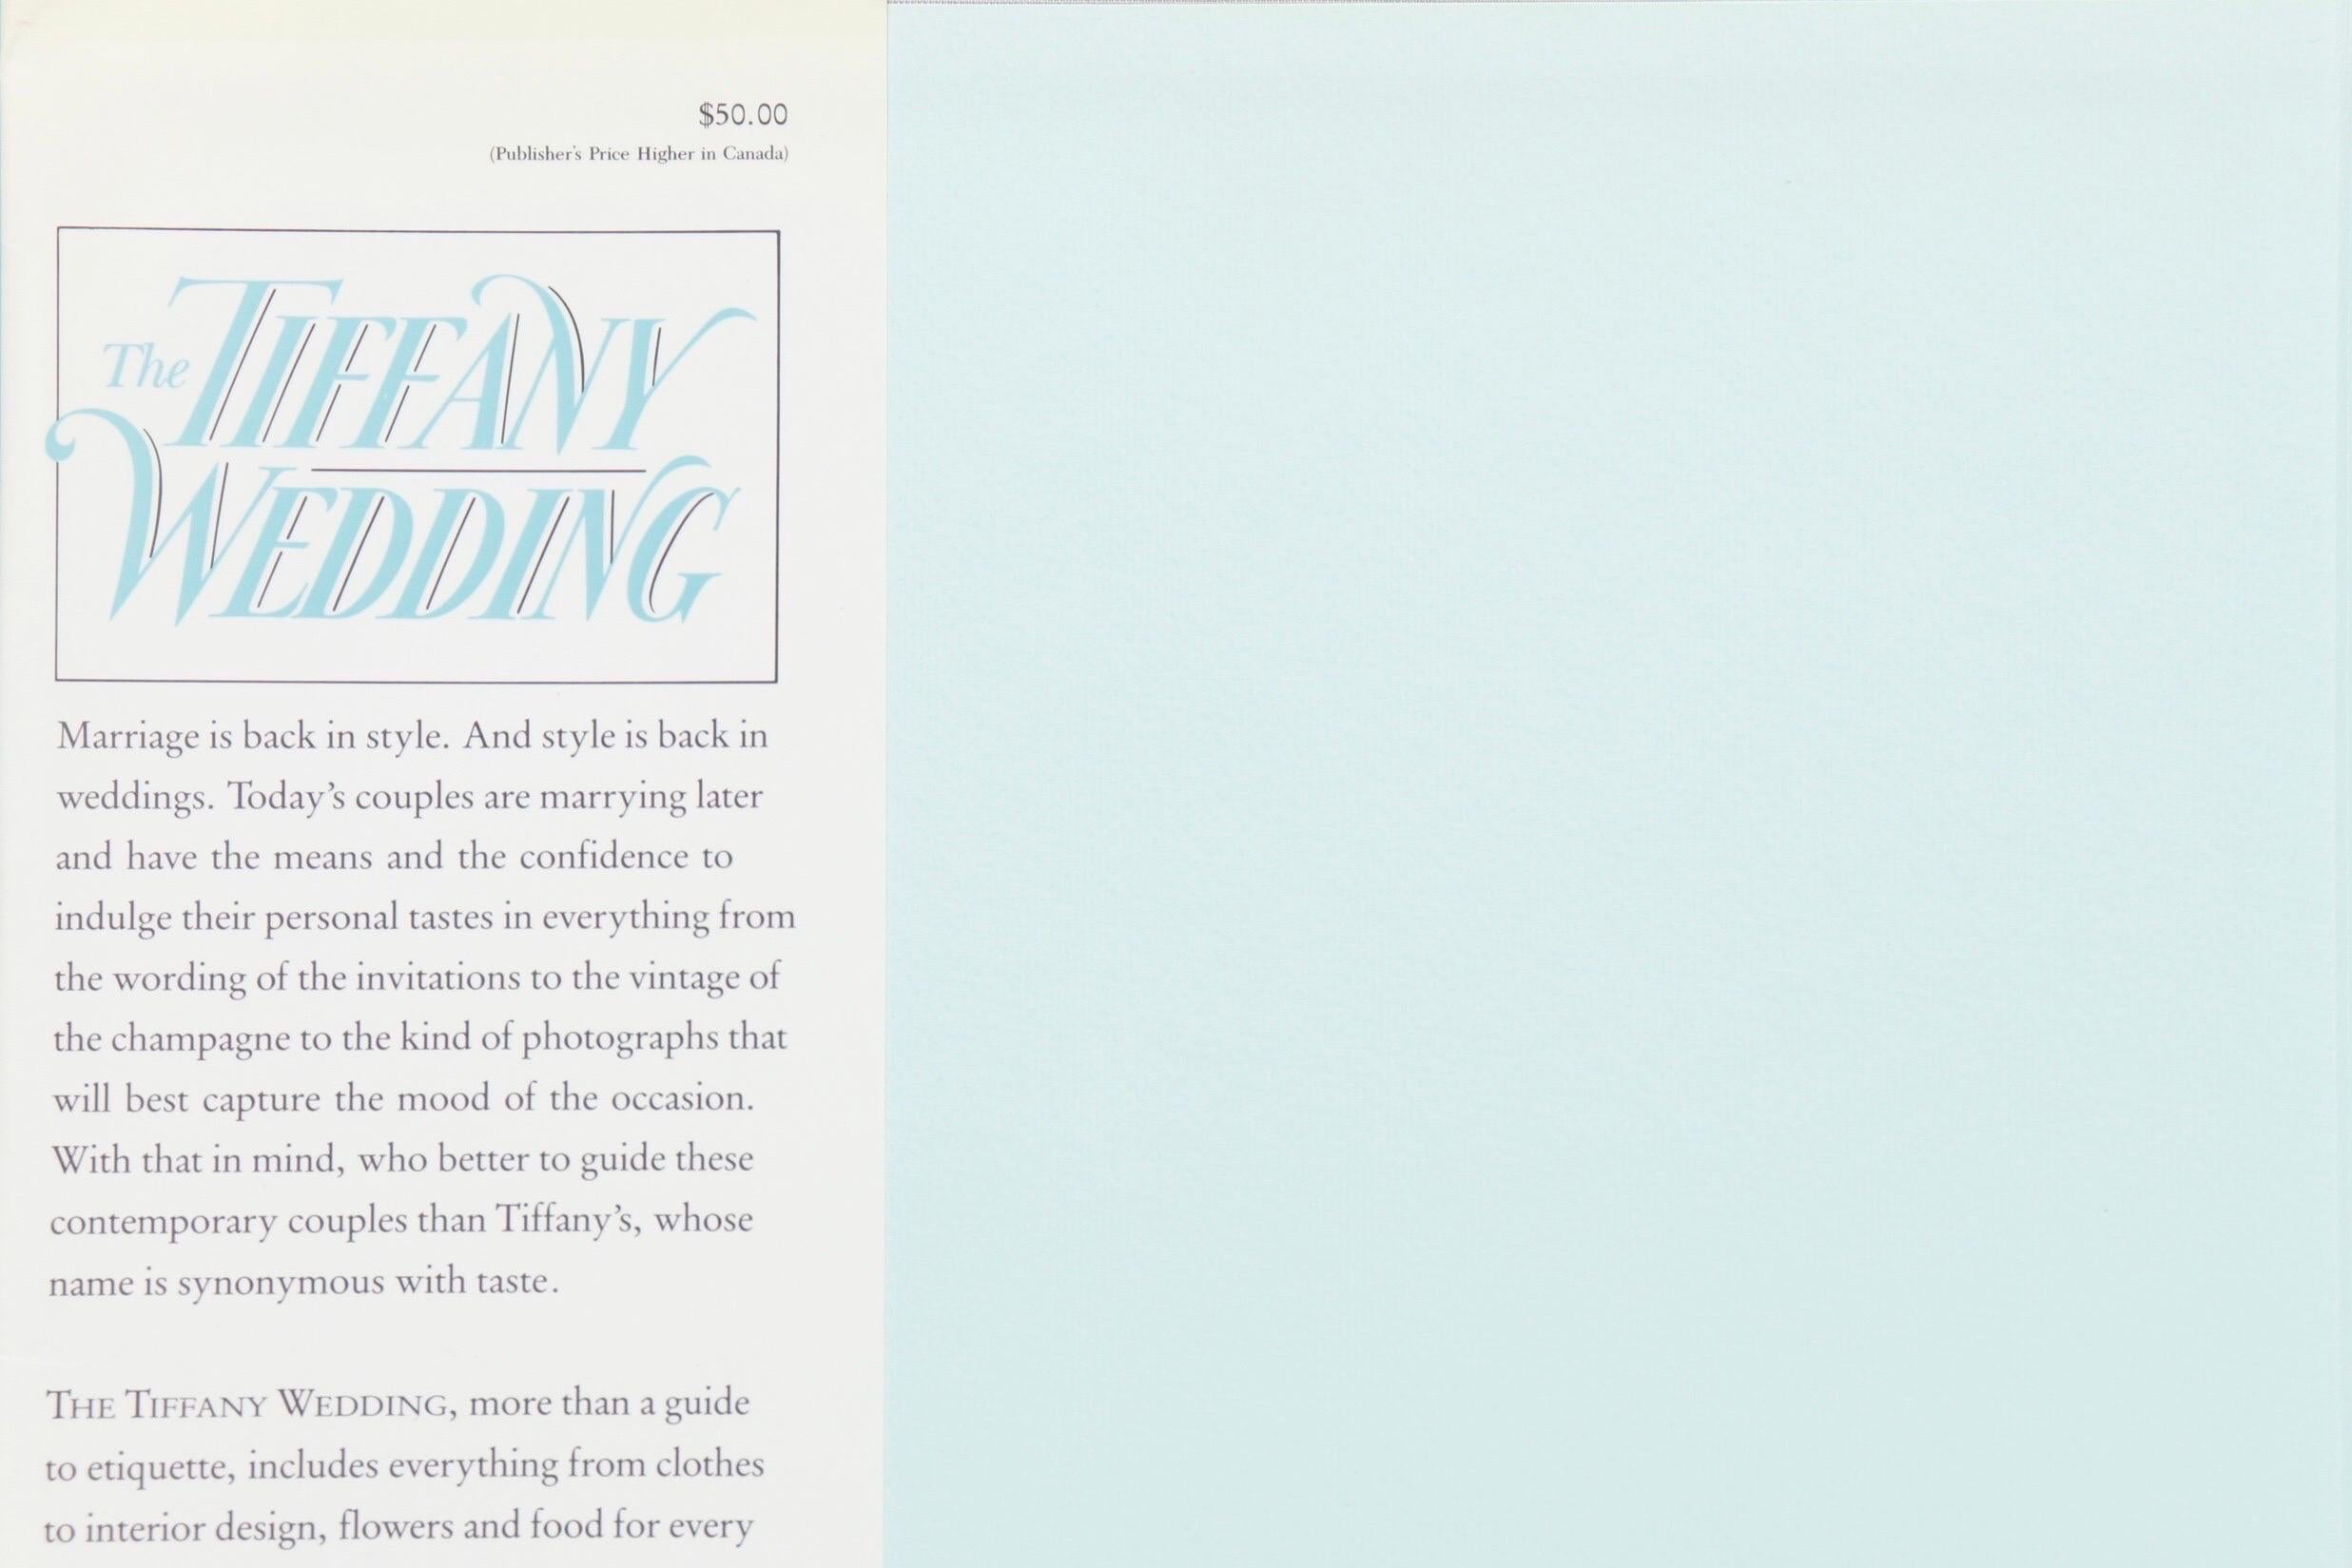 The Tiffany Wedding, de John Loring avec une introduction de Patricia Warner. Livre relié avec jaquette. Première édition publiée en octobre 1988 par Doubleday. Imprimé en Italie. 240 pages.
